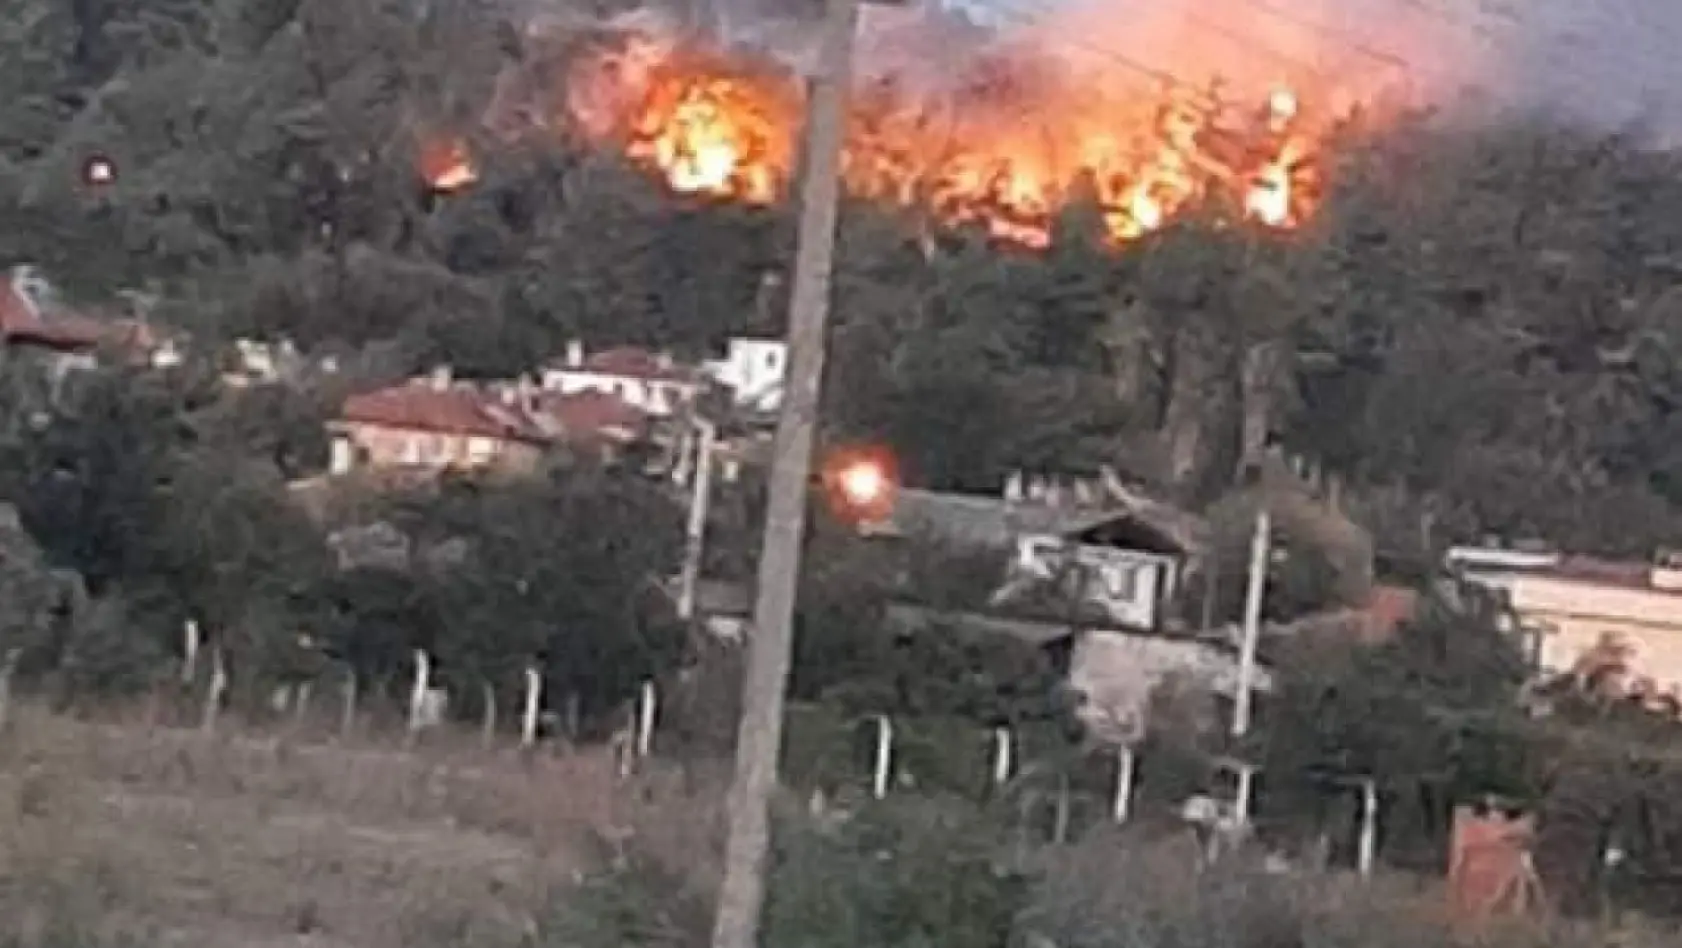 Ula'da orman yangını çıktı